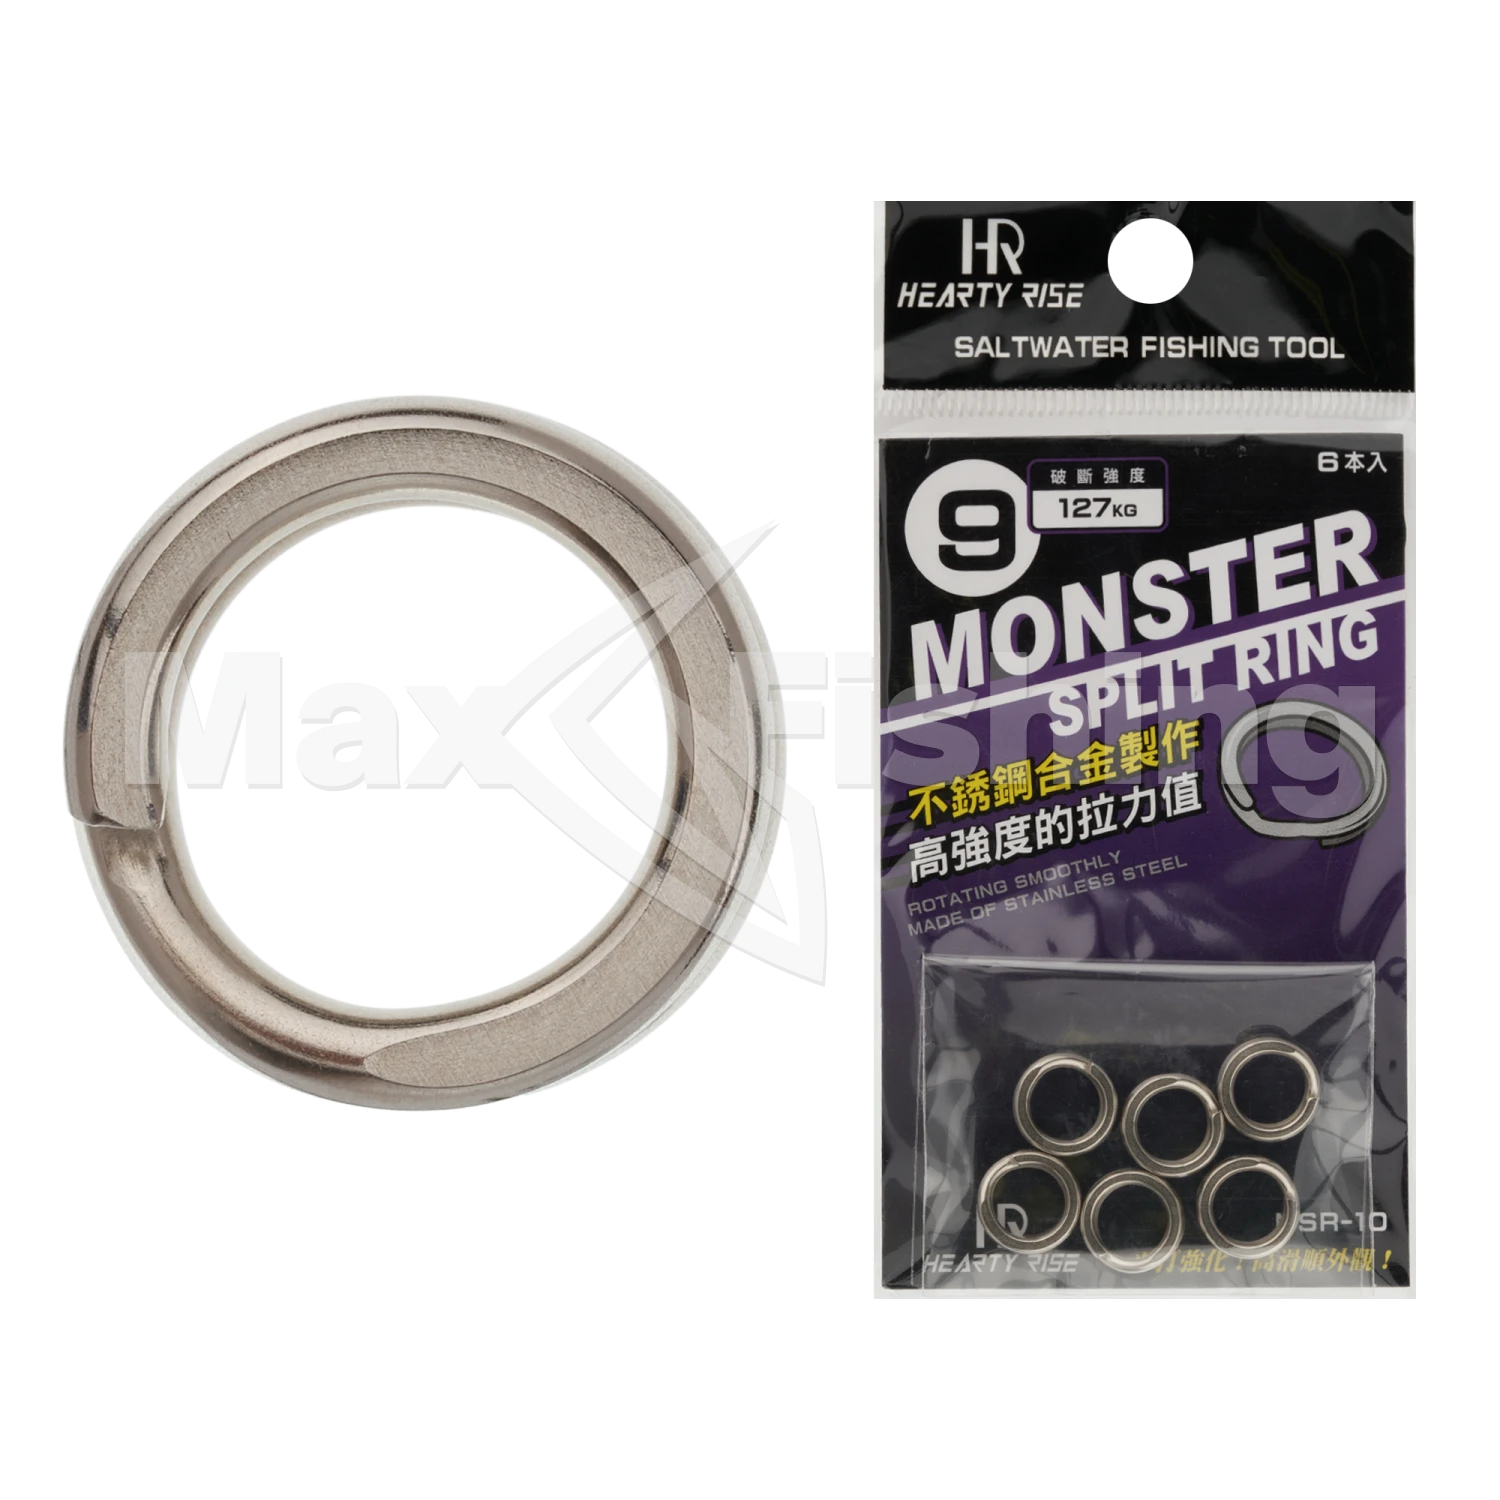 Кольцо заводное Hearty Rise Monster Game Split Ring MSR-10 #9